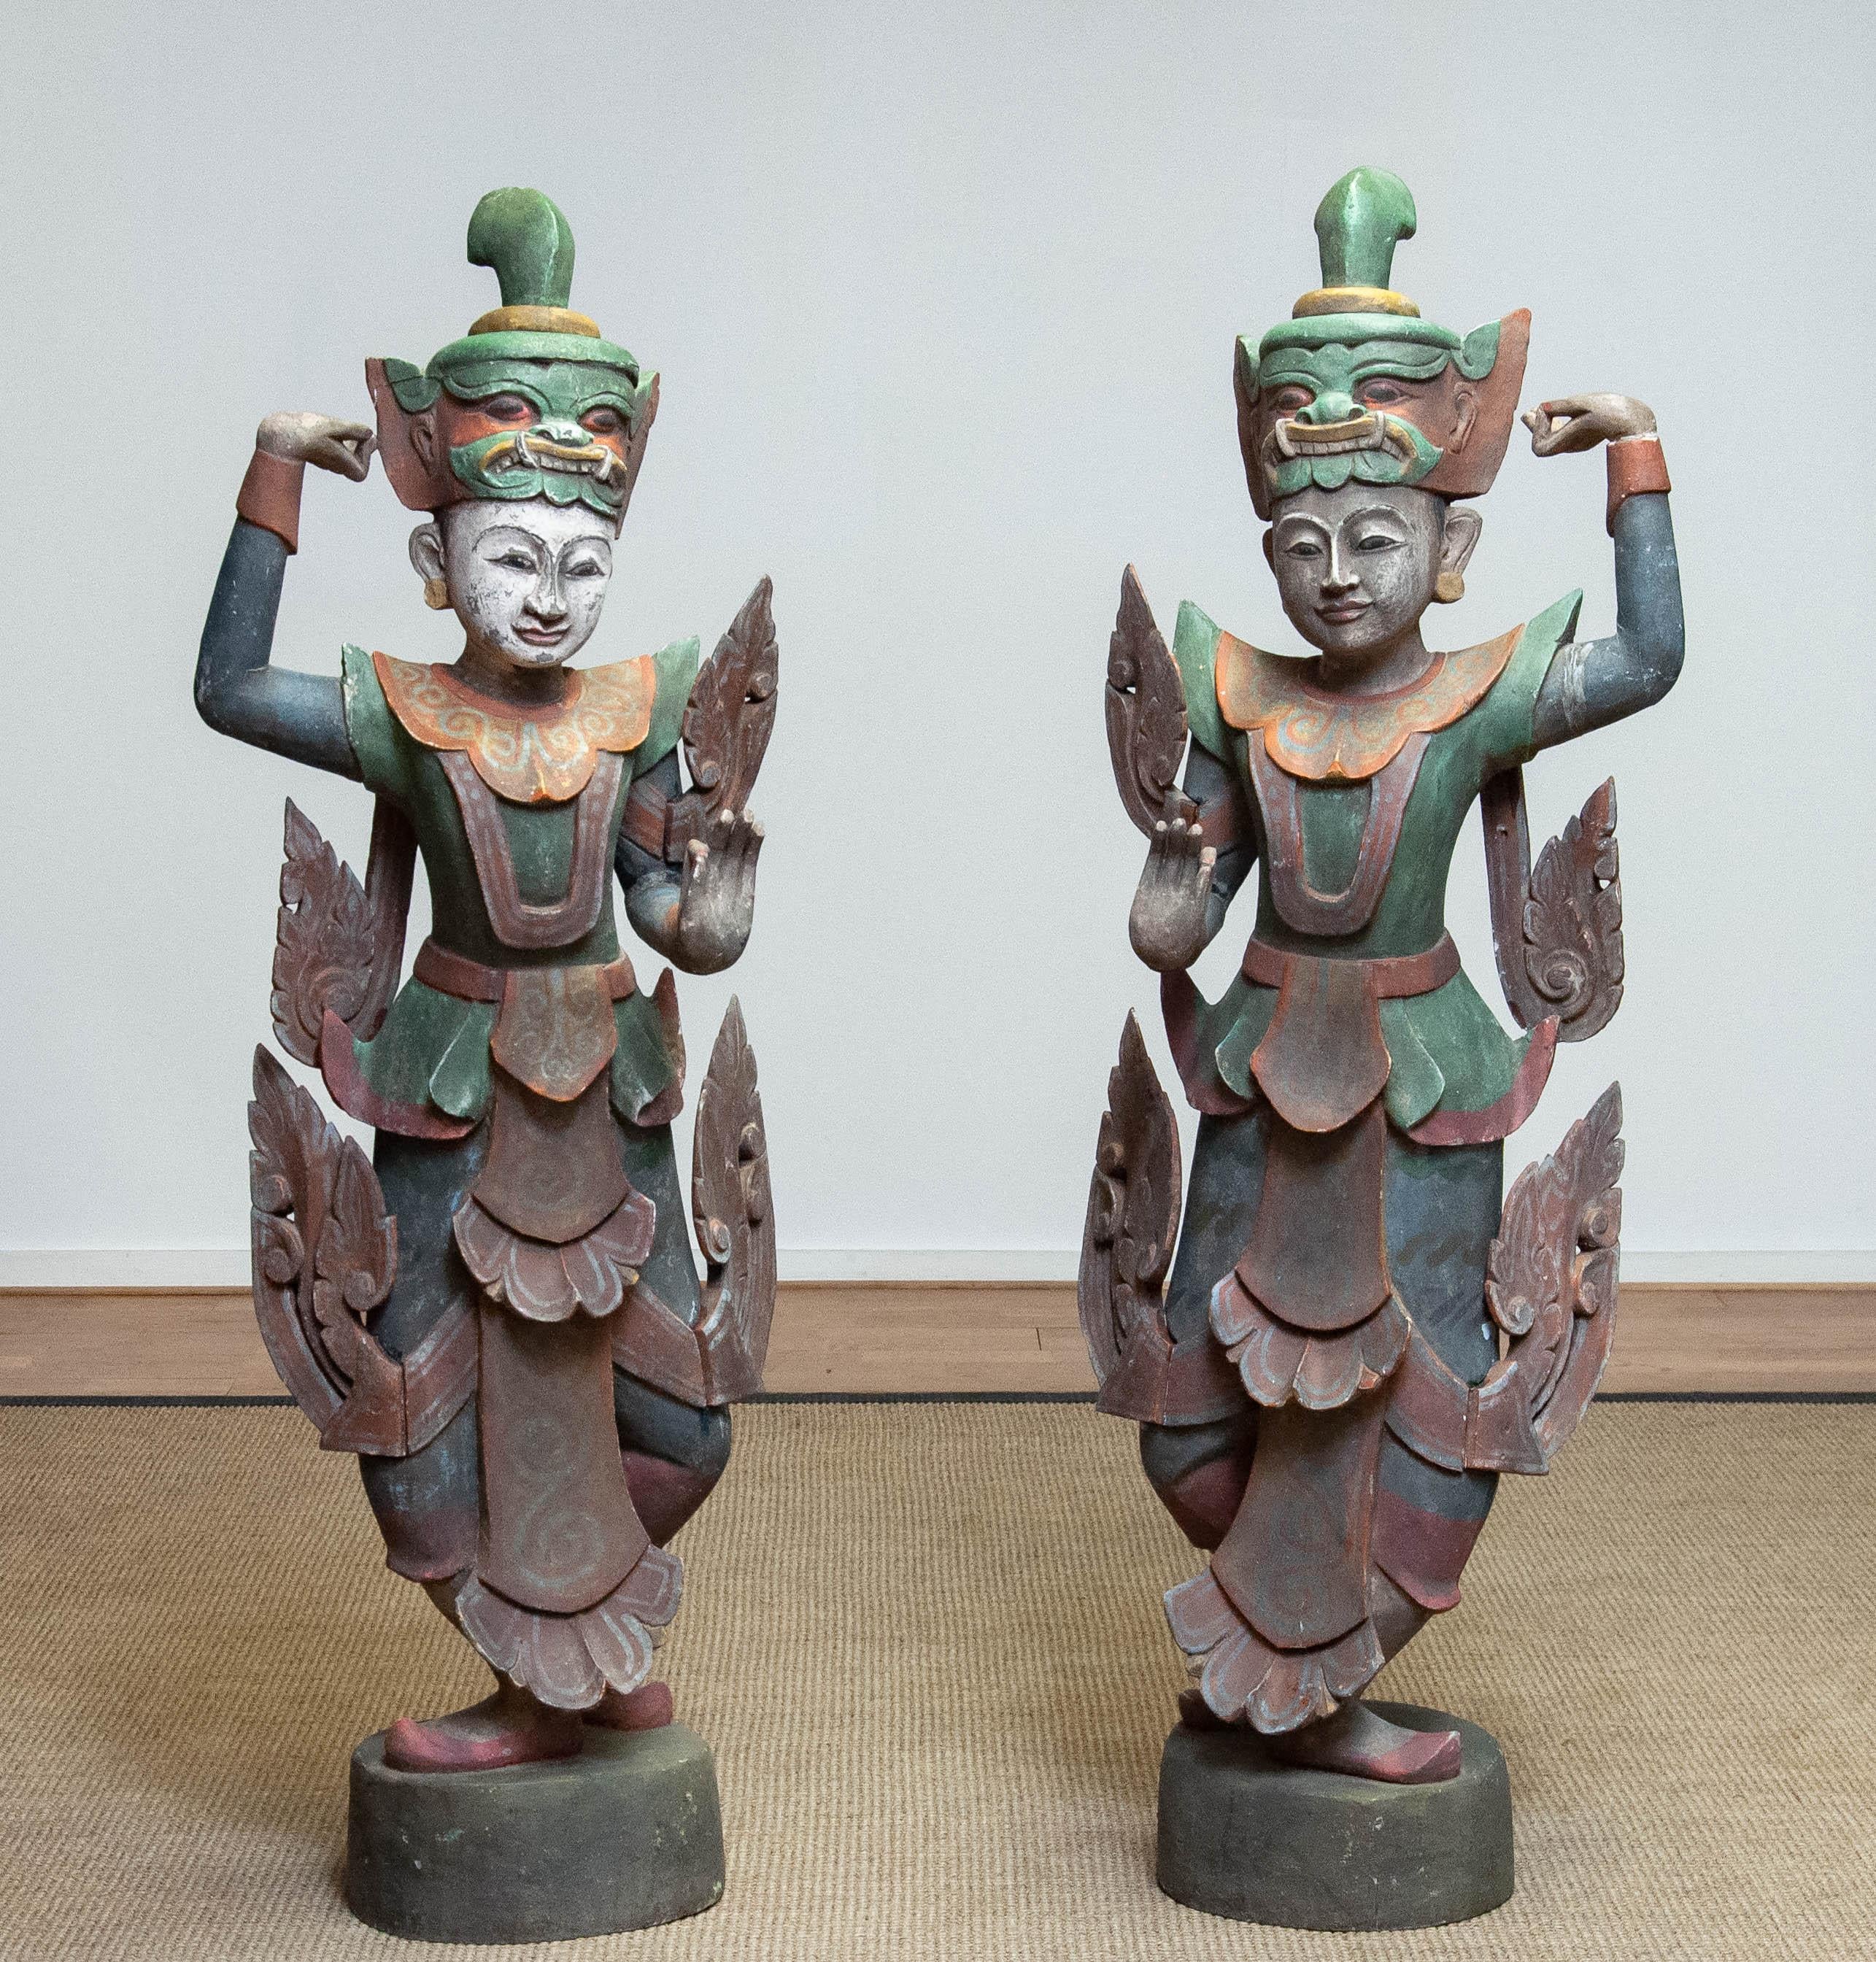 Absolut seltenes und wunderschönes Paar von zwei großen passenden polychromen burmesischen Tempeltänzen aus dem 19. Jahrhundert, handgeschnitzt aus einem Stück Teakholz.
Diese beiden Tänzerinnen sind ein tolles und dekoratives Stück Dekoration für